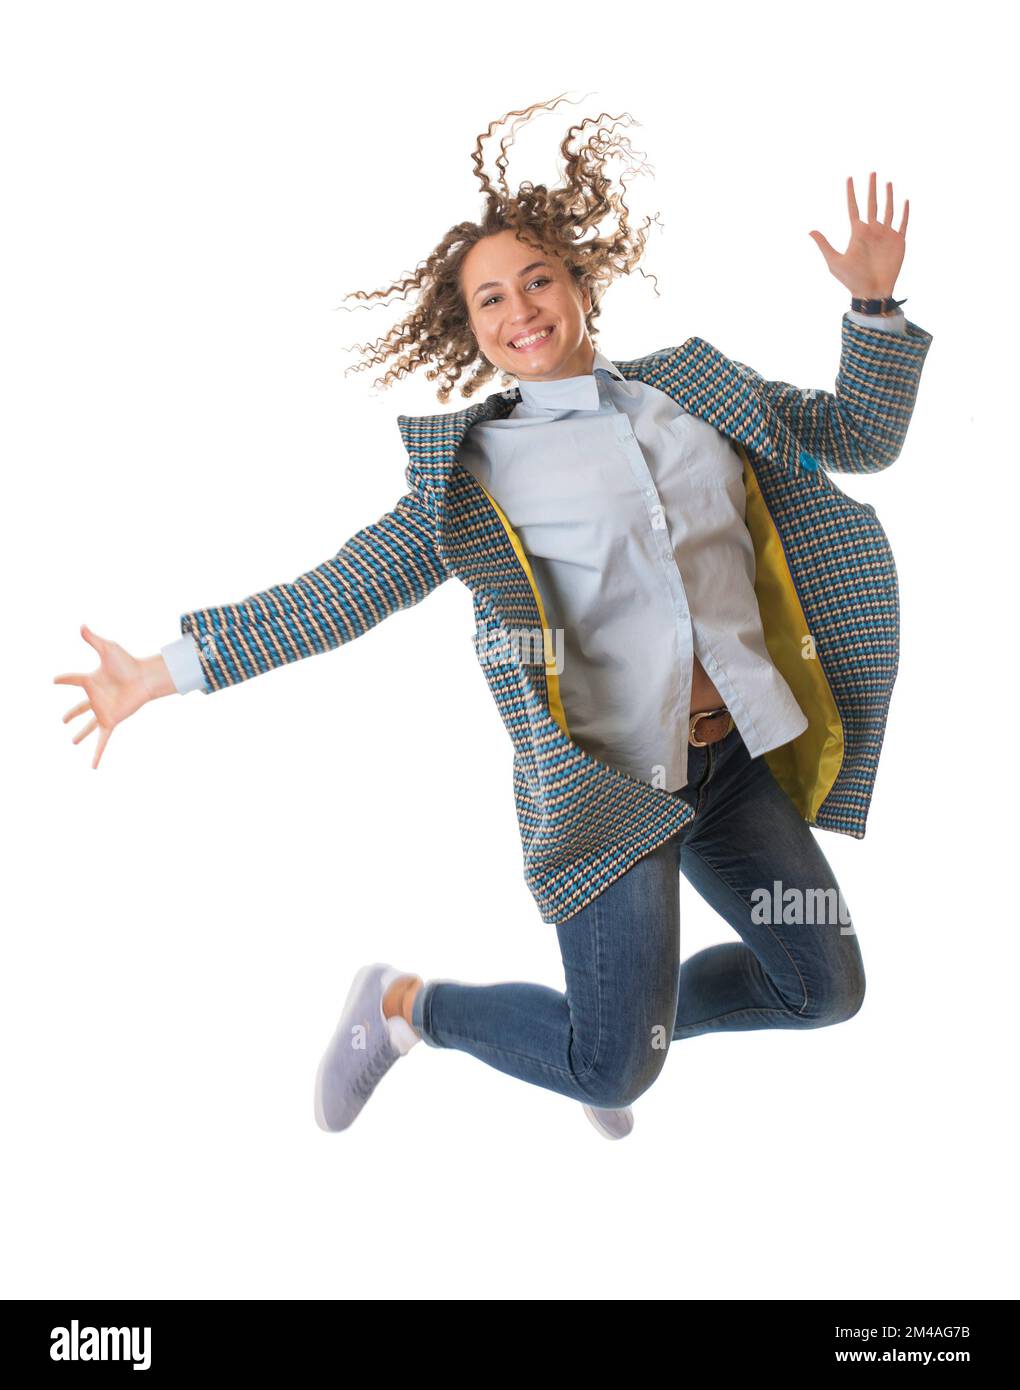 Hübsches junges Mädchen in einem hellen Mantel, das auf weißen Hintergrund springt Stockfoto